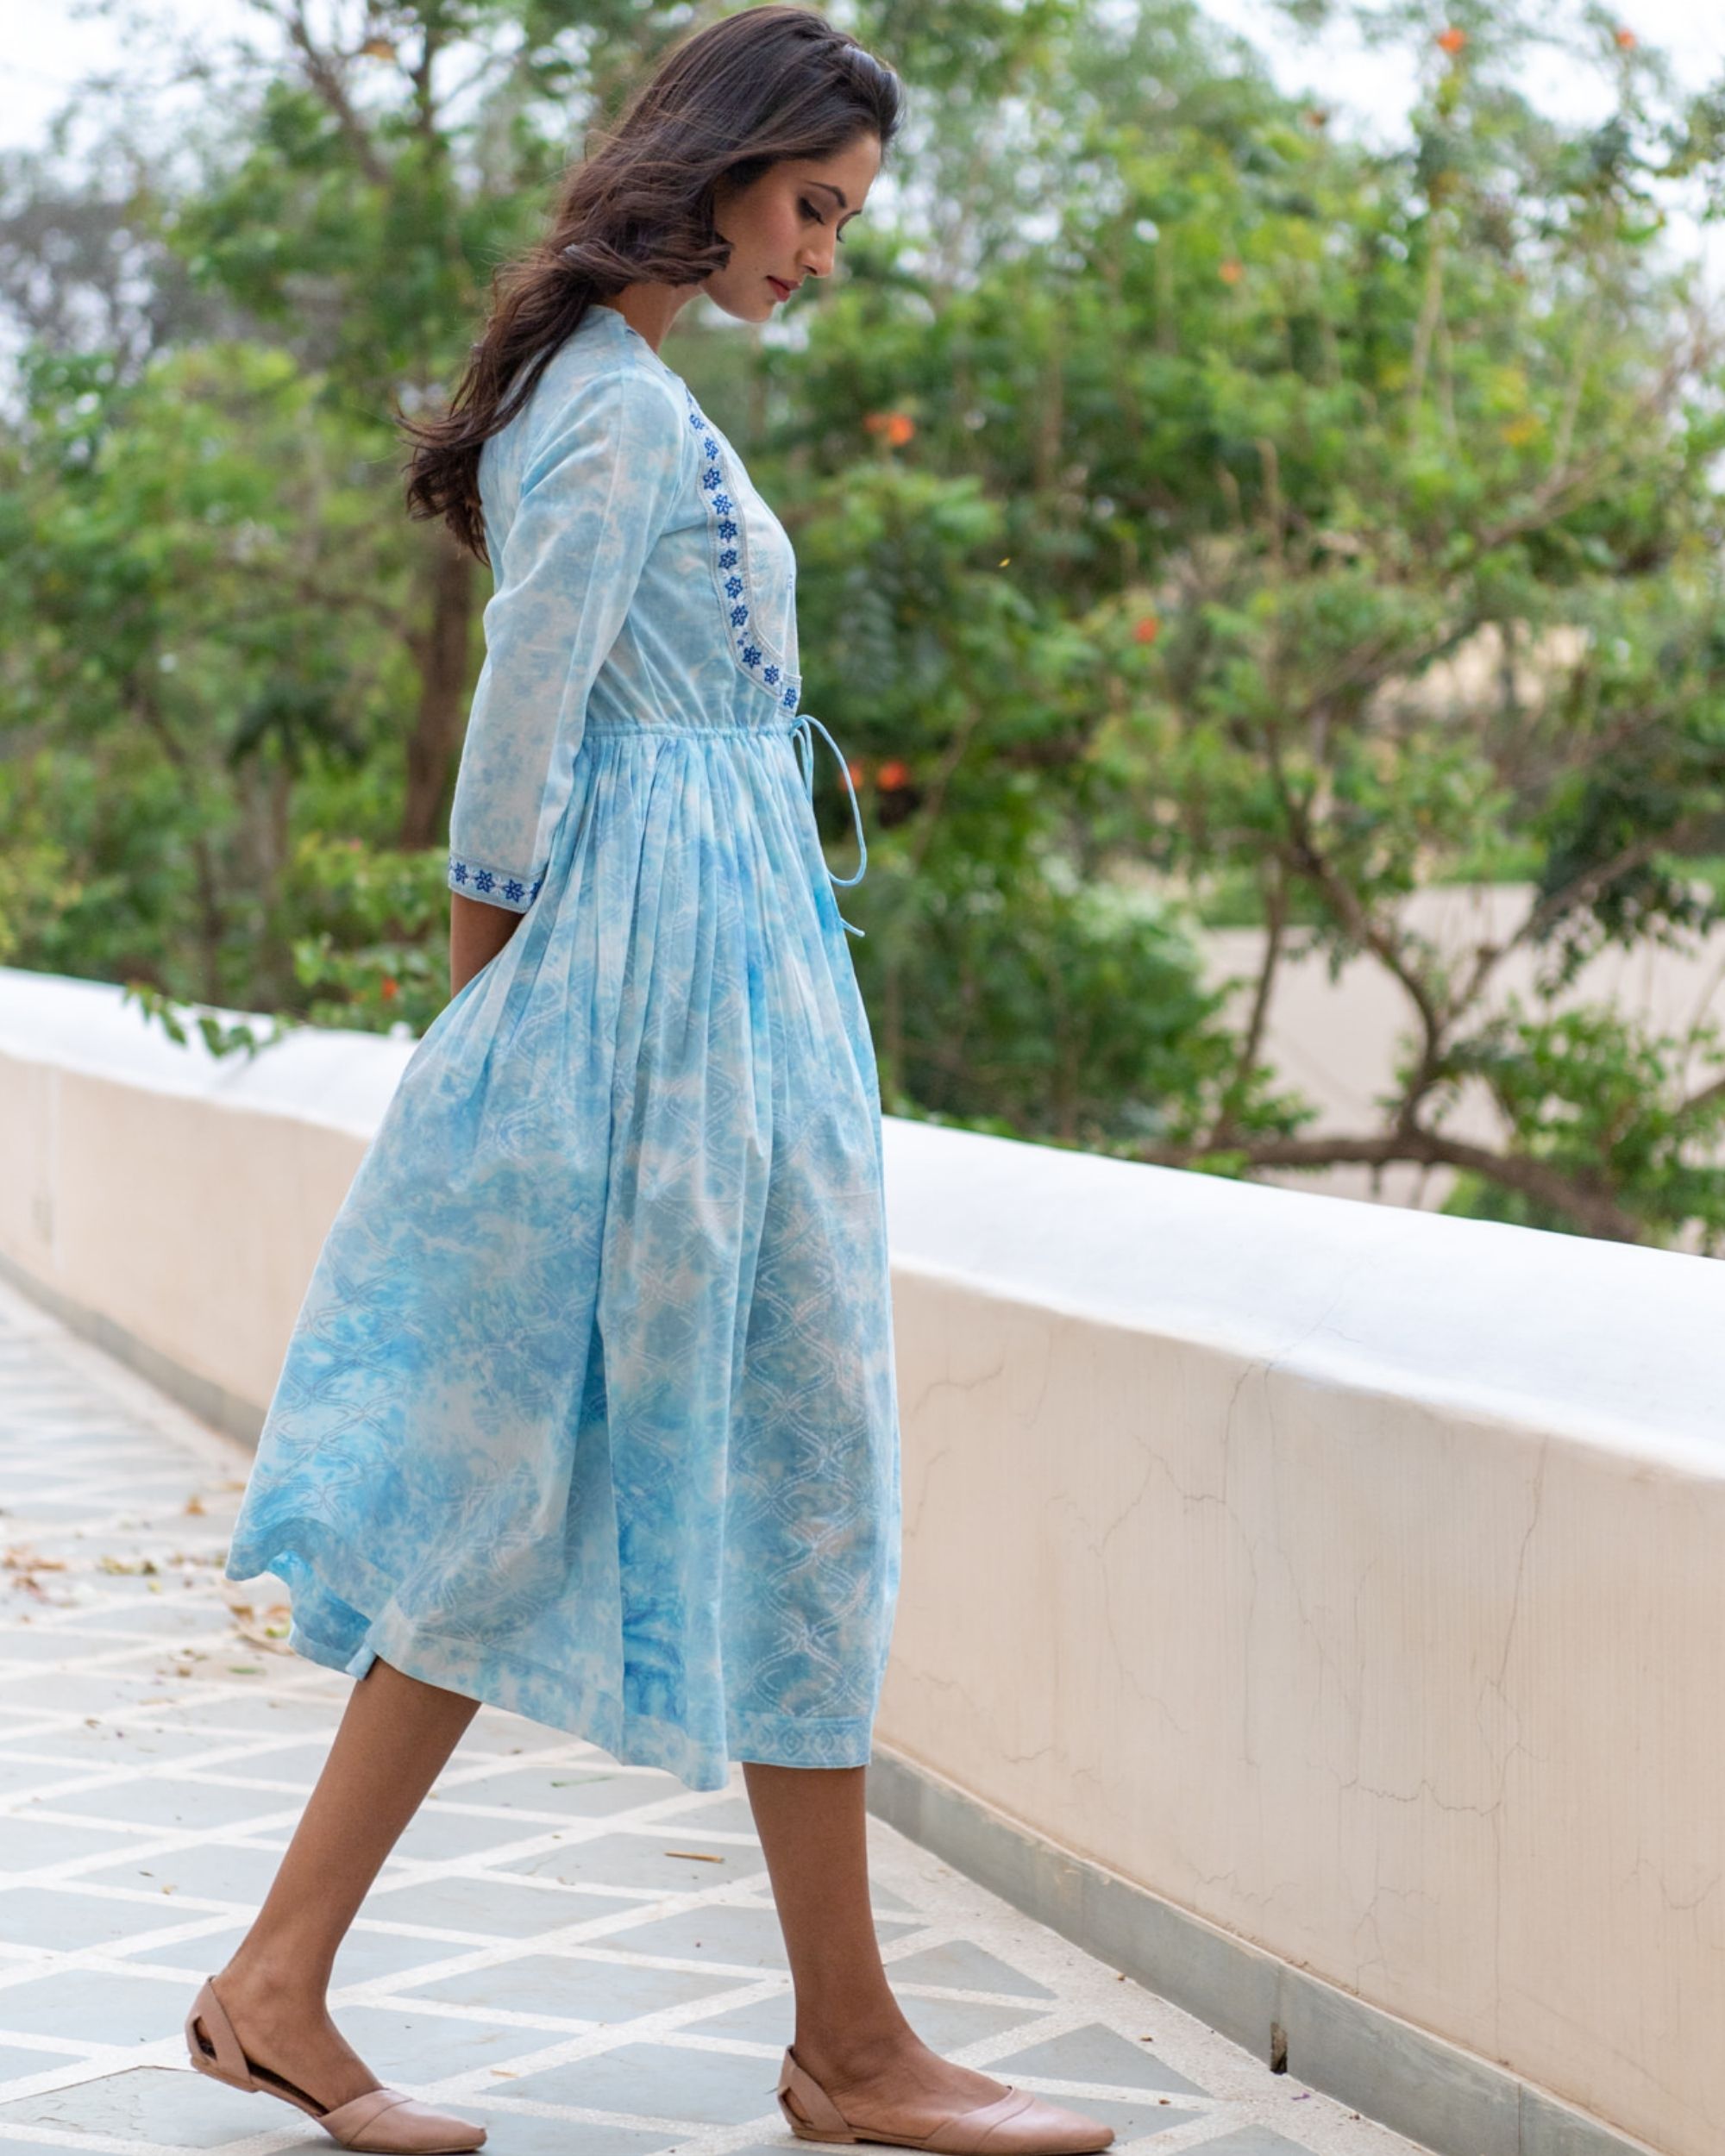 Sky blue anarkali dress by Chappai